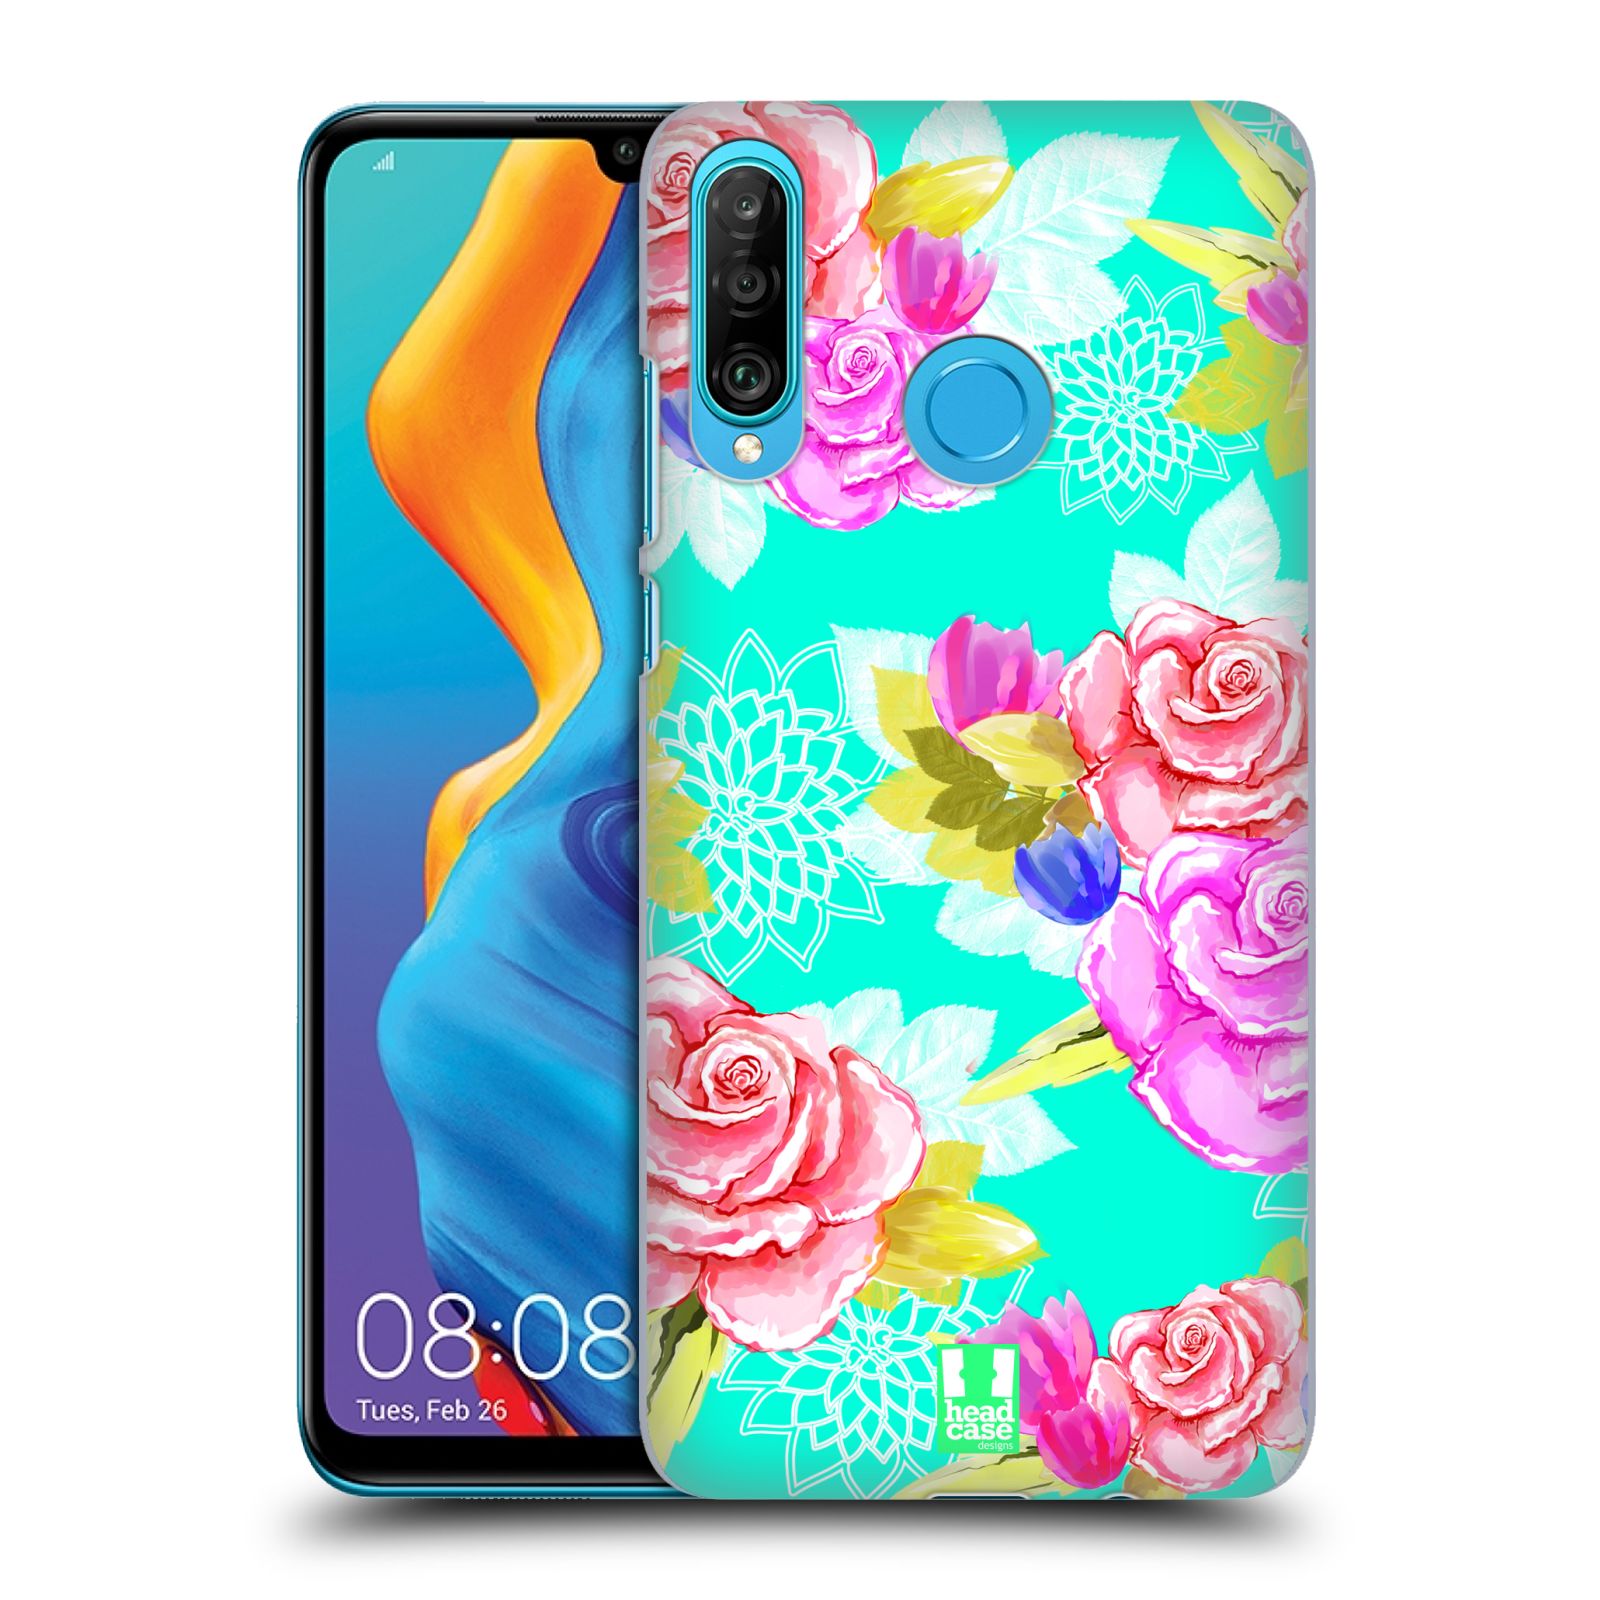 Pouzdro na mobil Huawei P30 LITE - HEAD CASE - vzor Malované květiny barevné AQUA MODRÁ